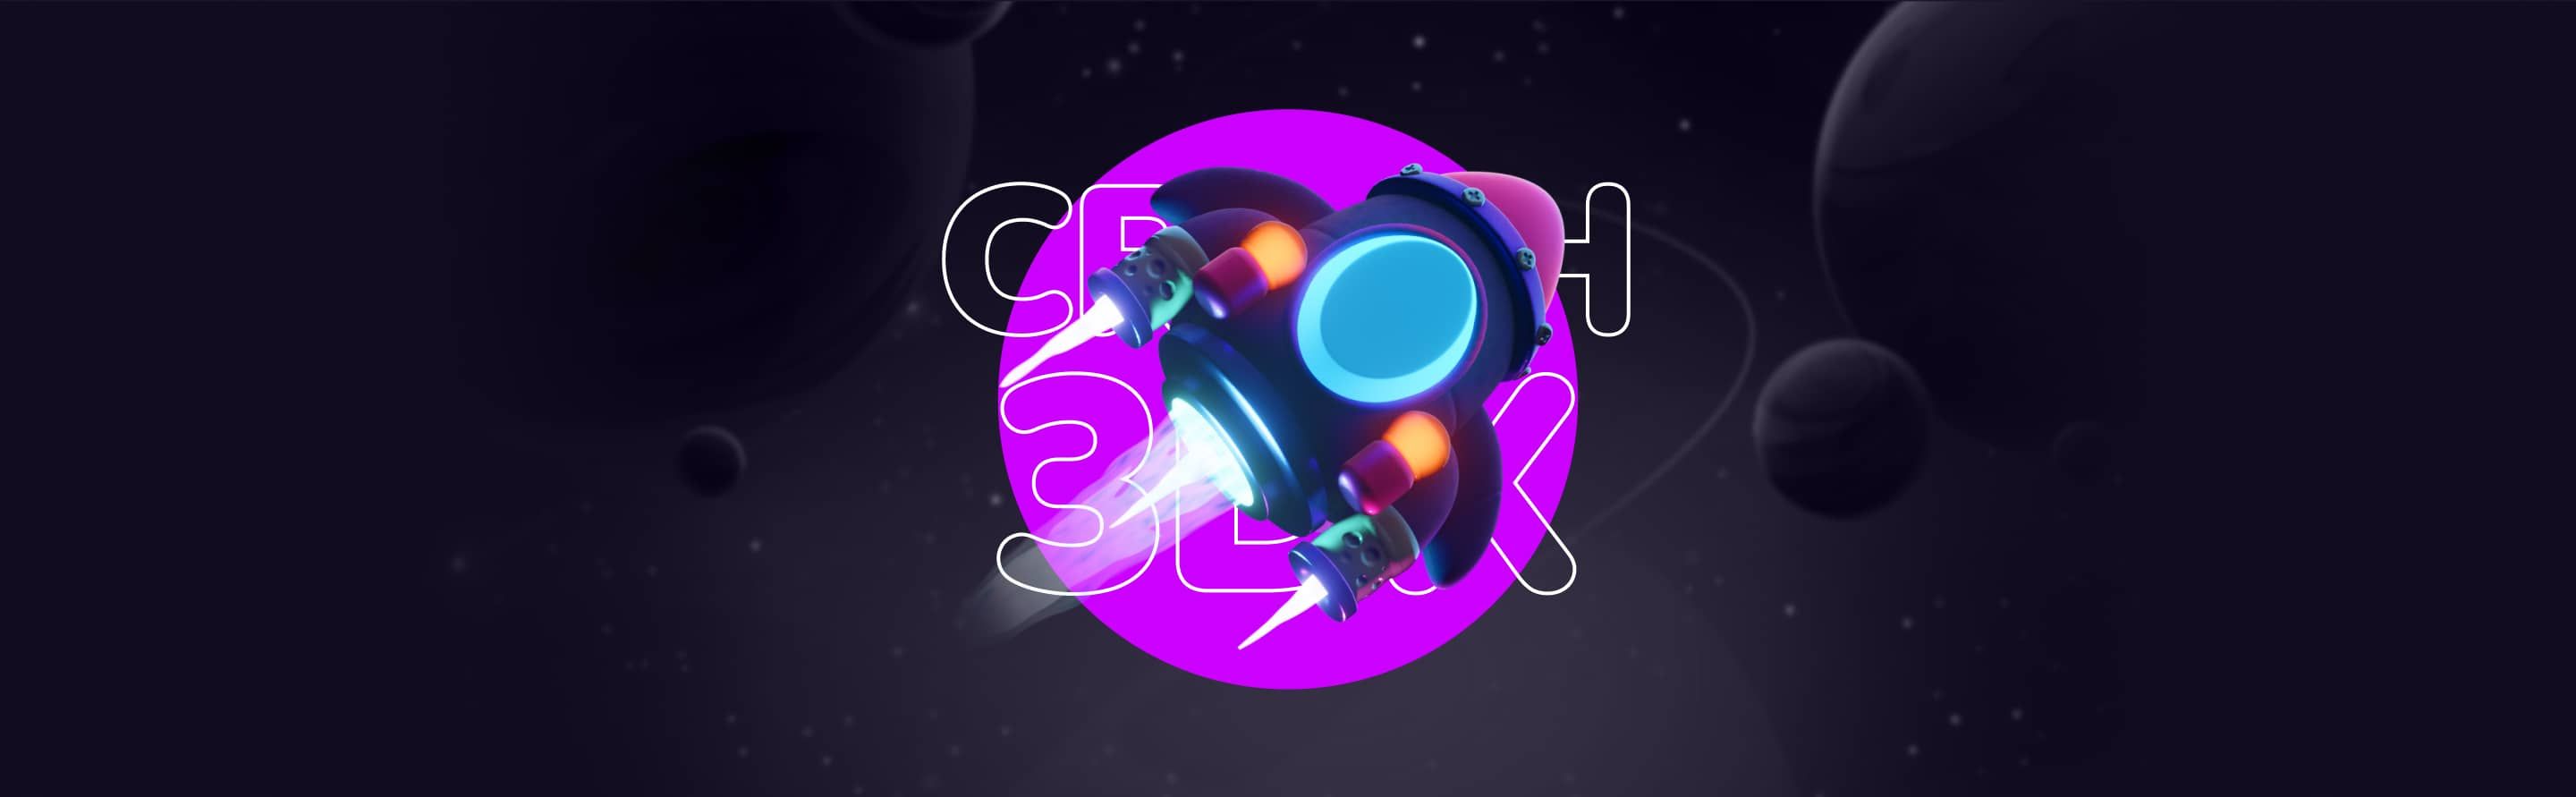 Crash 3DX | Gameplay Banner